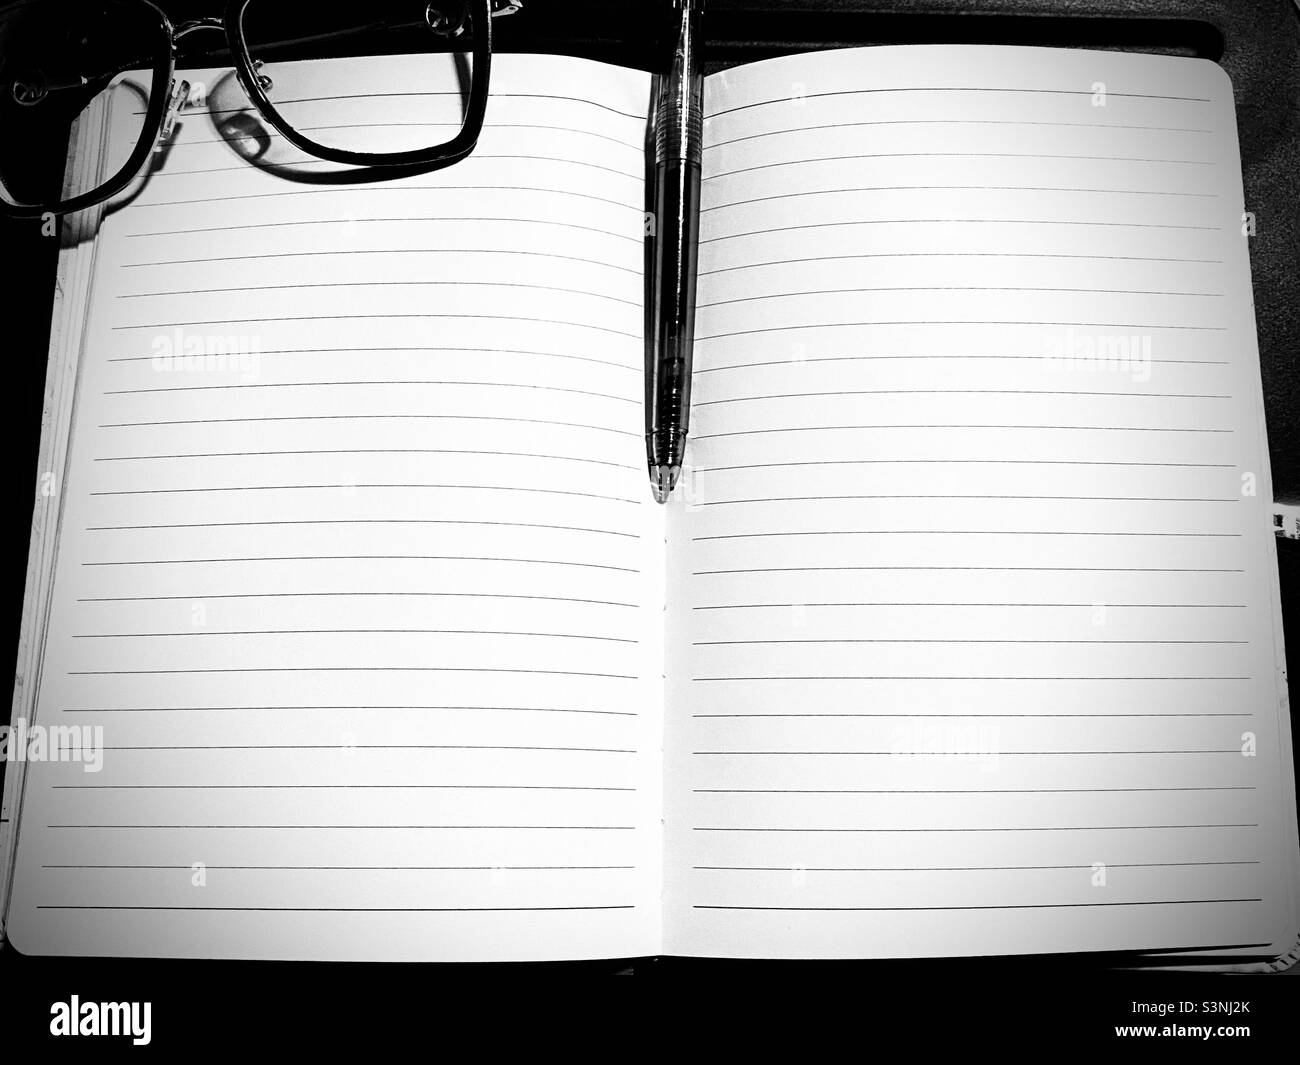 Pose à plat en noir et blanc avec un carnet ouvert, des pages vierges, un stylo à encre et des lunettes sur un bureau pour ordinateur portable, du papier vierge ; Livre ouvert, journal Banque D'Images